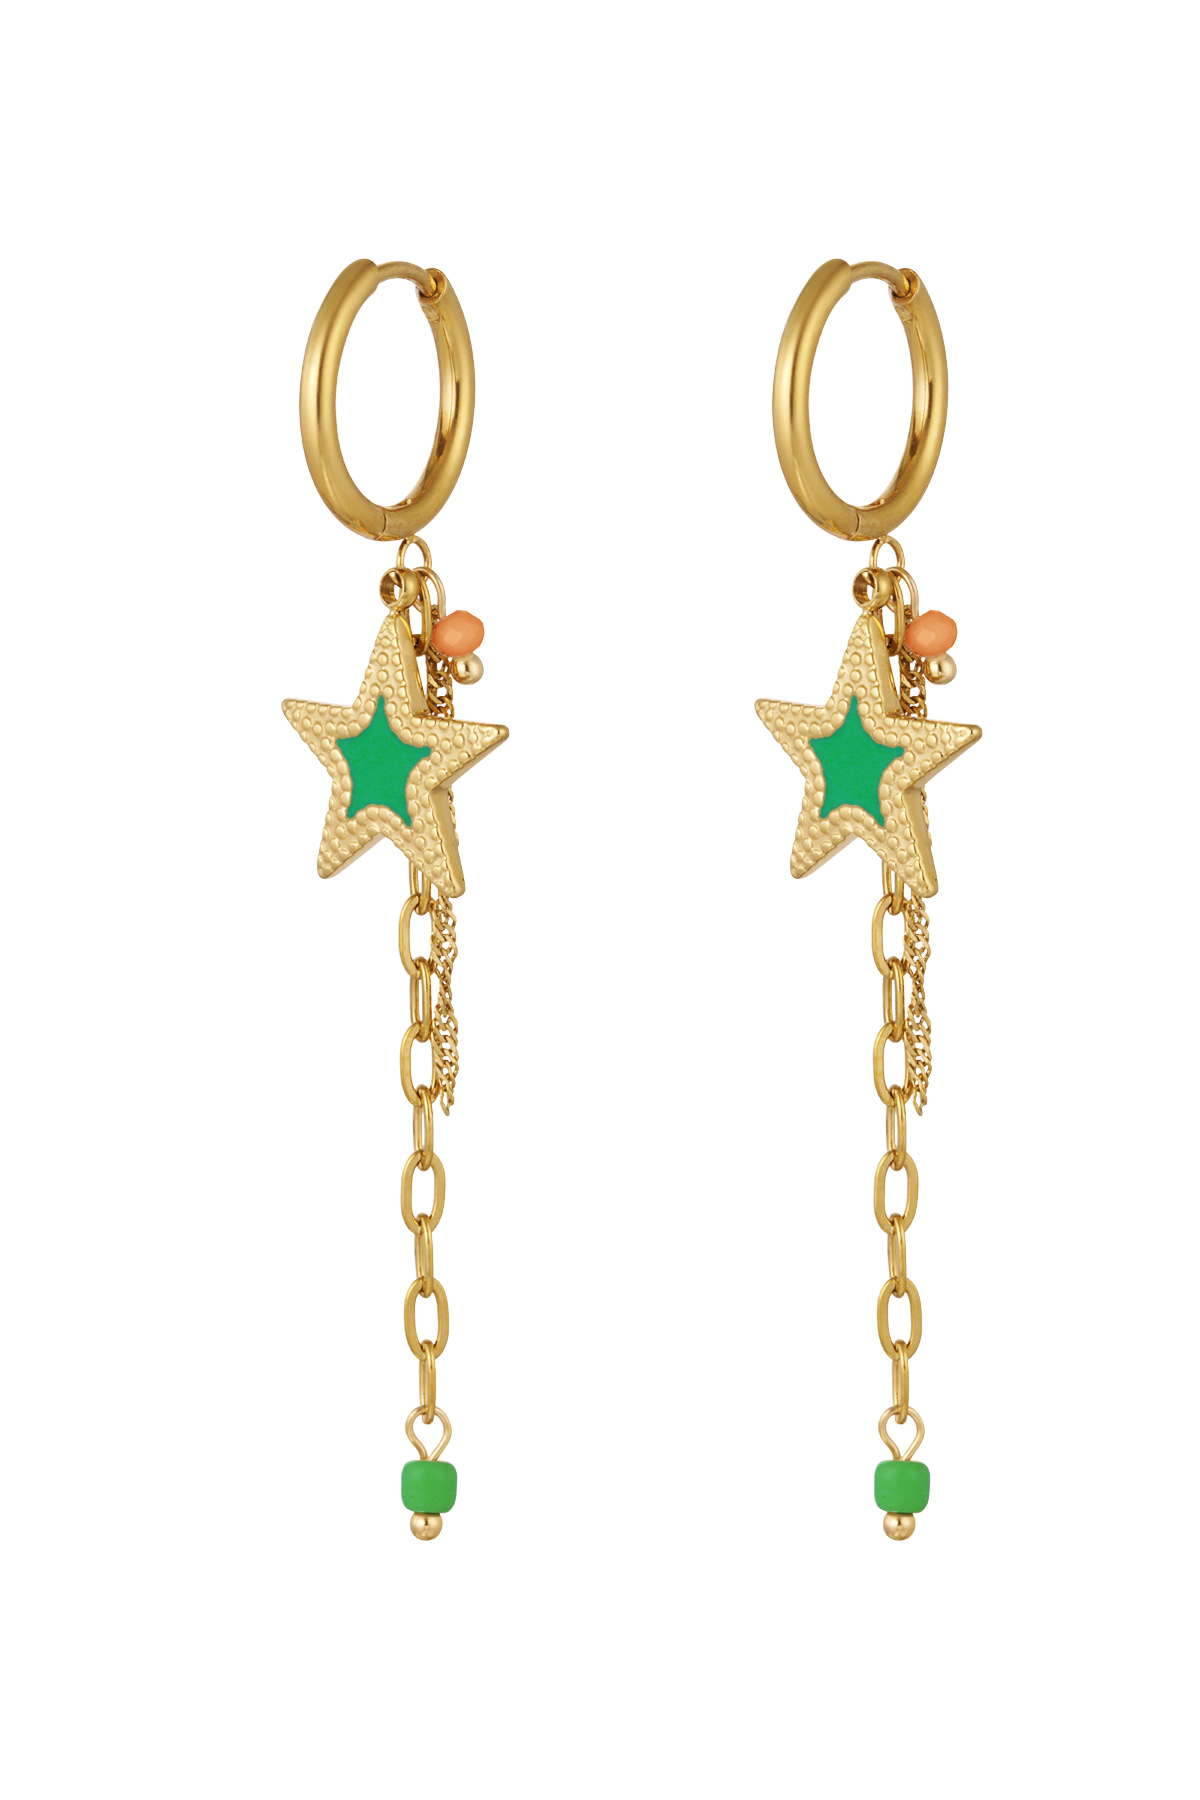 Boucles d'oreilles avec chaîne et étoile vert - or